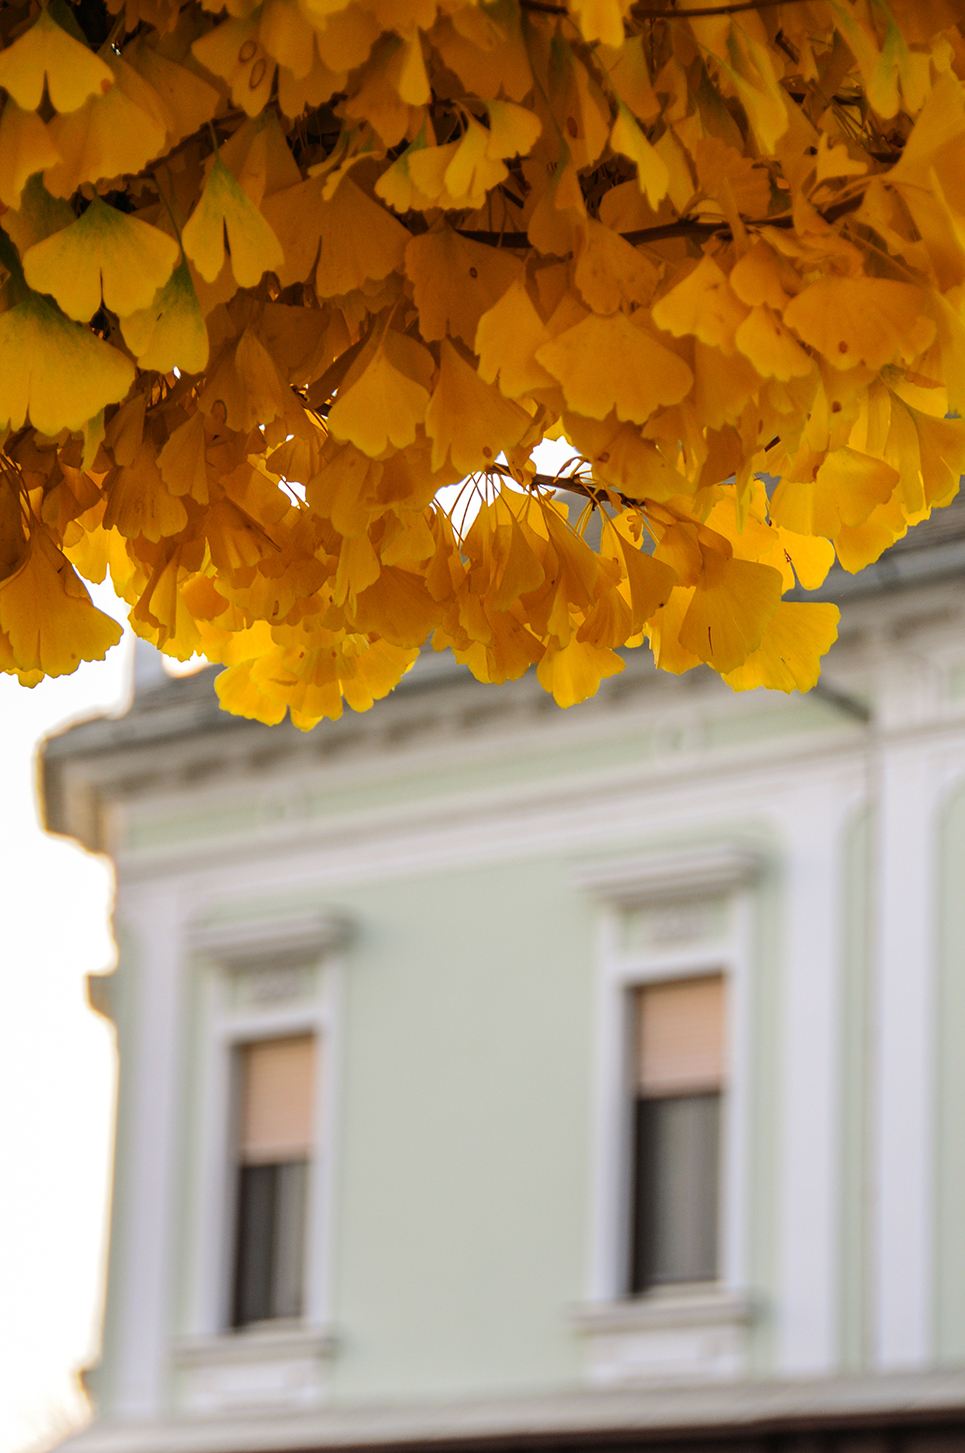 Az ősz színei Orosháza főtéren, szebbnél szebb színekben pompáznak a búcsúzó lombkoronák (Fotó: Kecskeméti Krisztina)